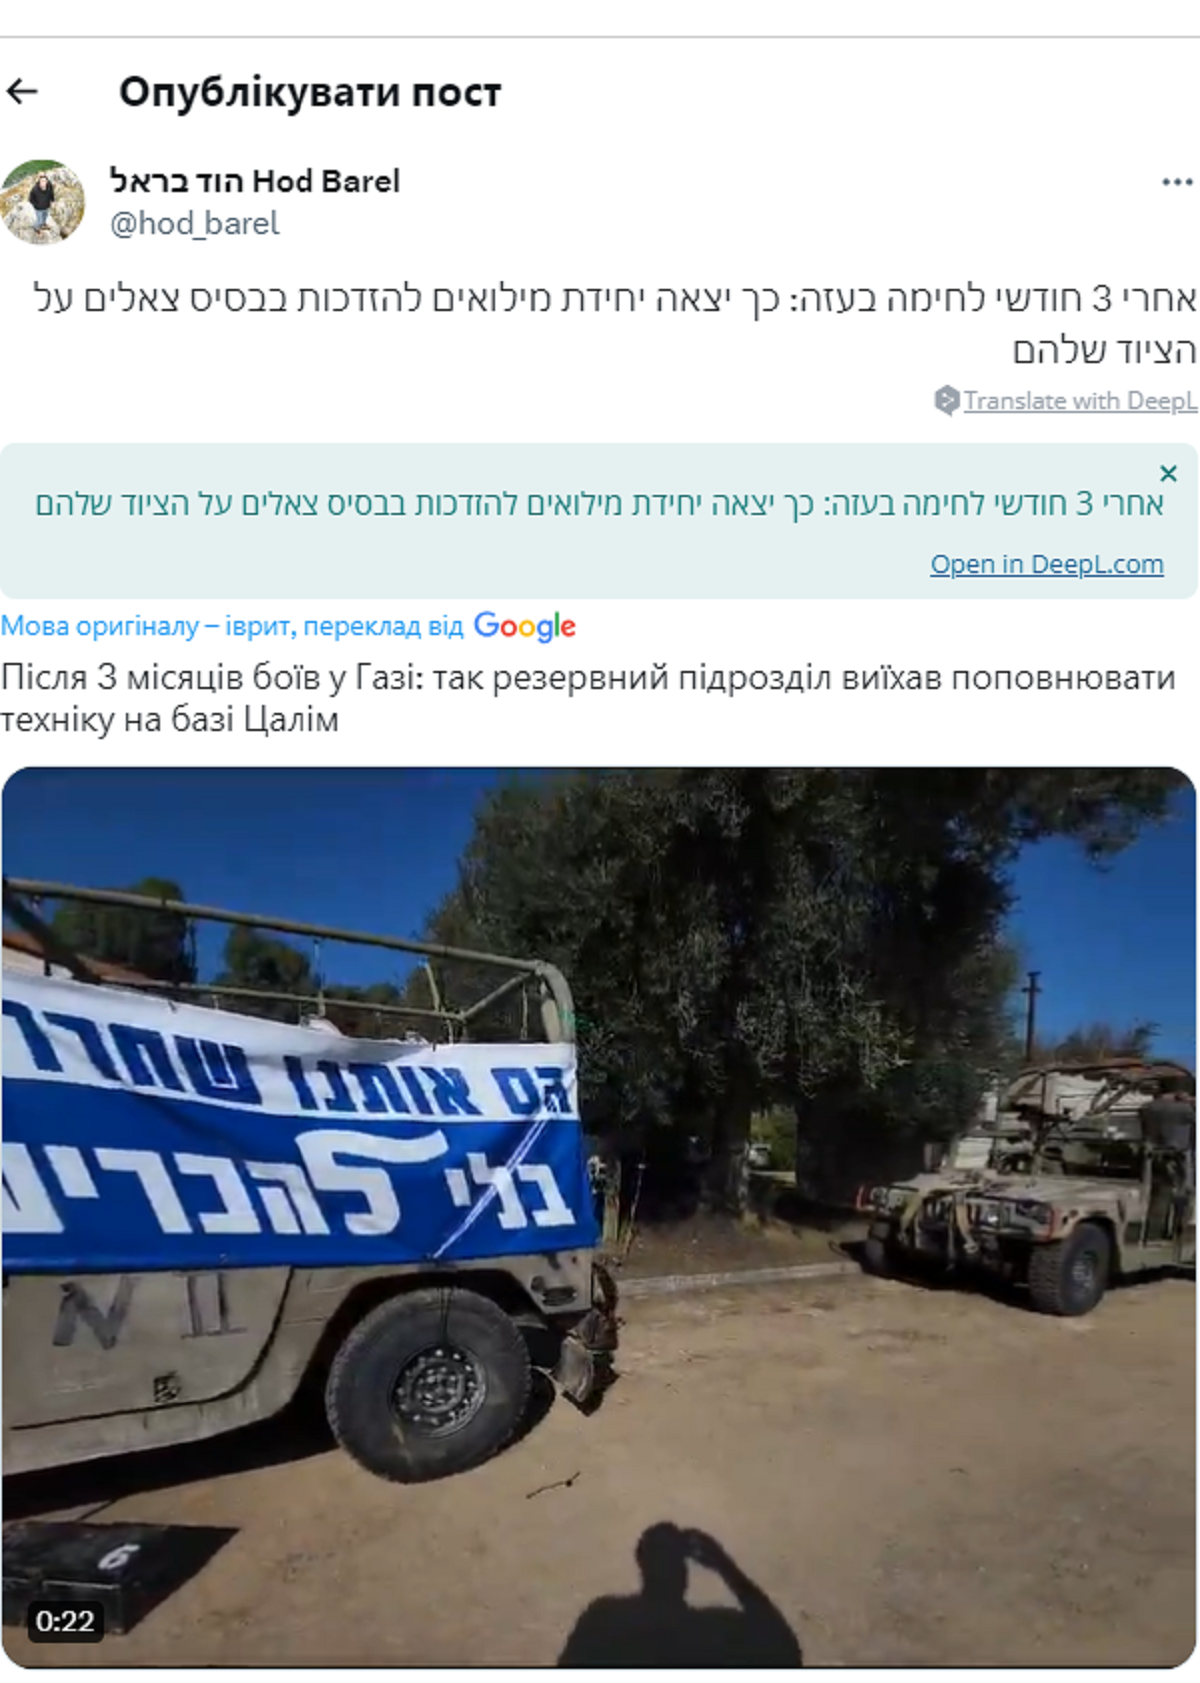 Ізраїльські резервісти влаштували "м'який протест" проти відведення їх з Гази: в ЦАХАЛ відреагували. Відео